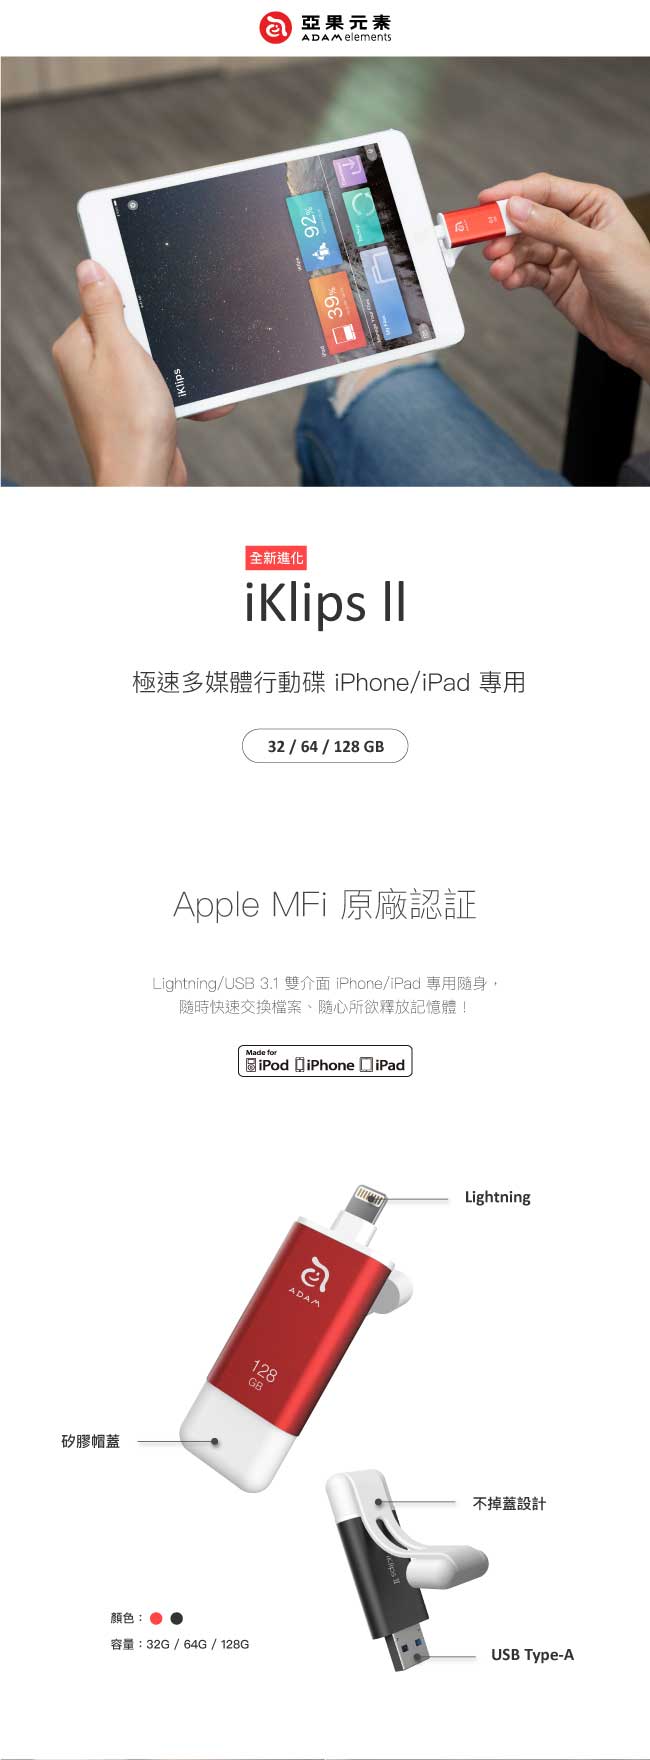 亞果元素iKlips II Lightning/USB 3.1雙介面隨身碟128GB